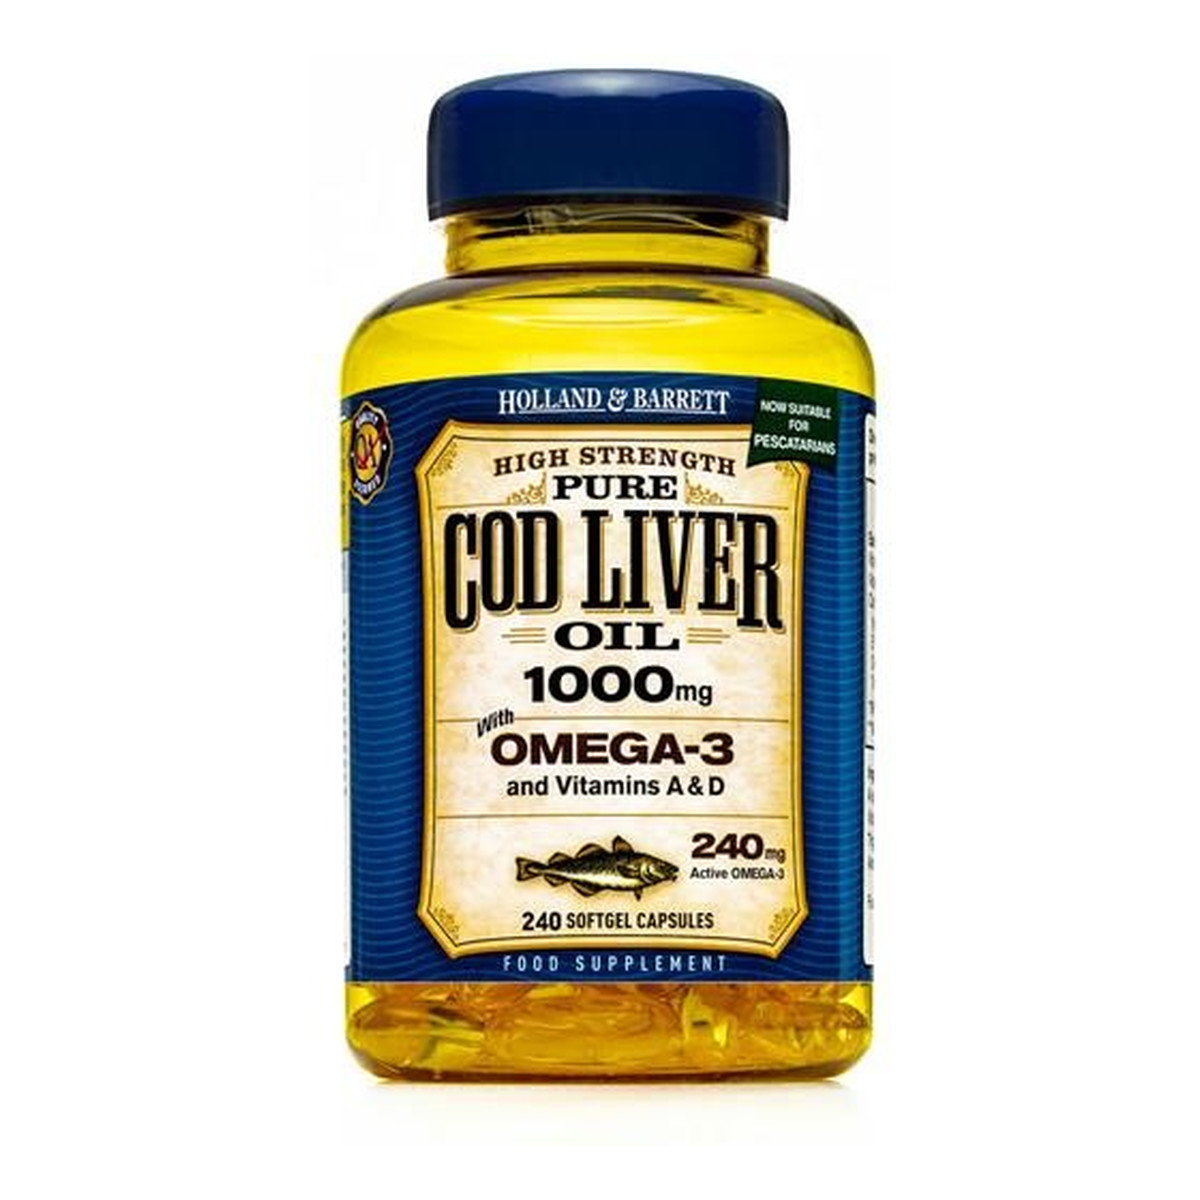 Holland & Barrett Pure Cod Liver Oil 1000mg olej z wątroby dorsza z kwasami Omega-3 suplement diety 240 kapsułek żelowych